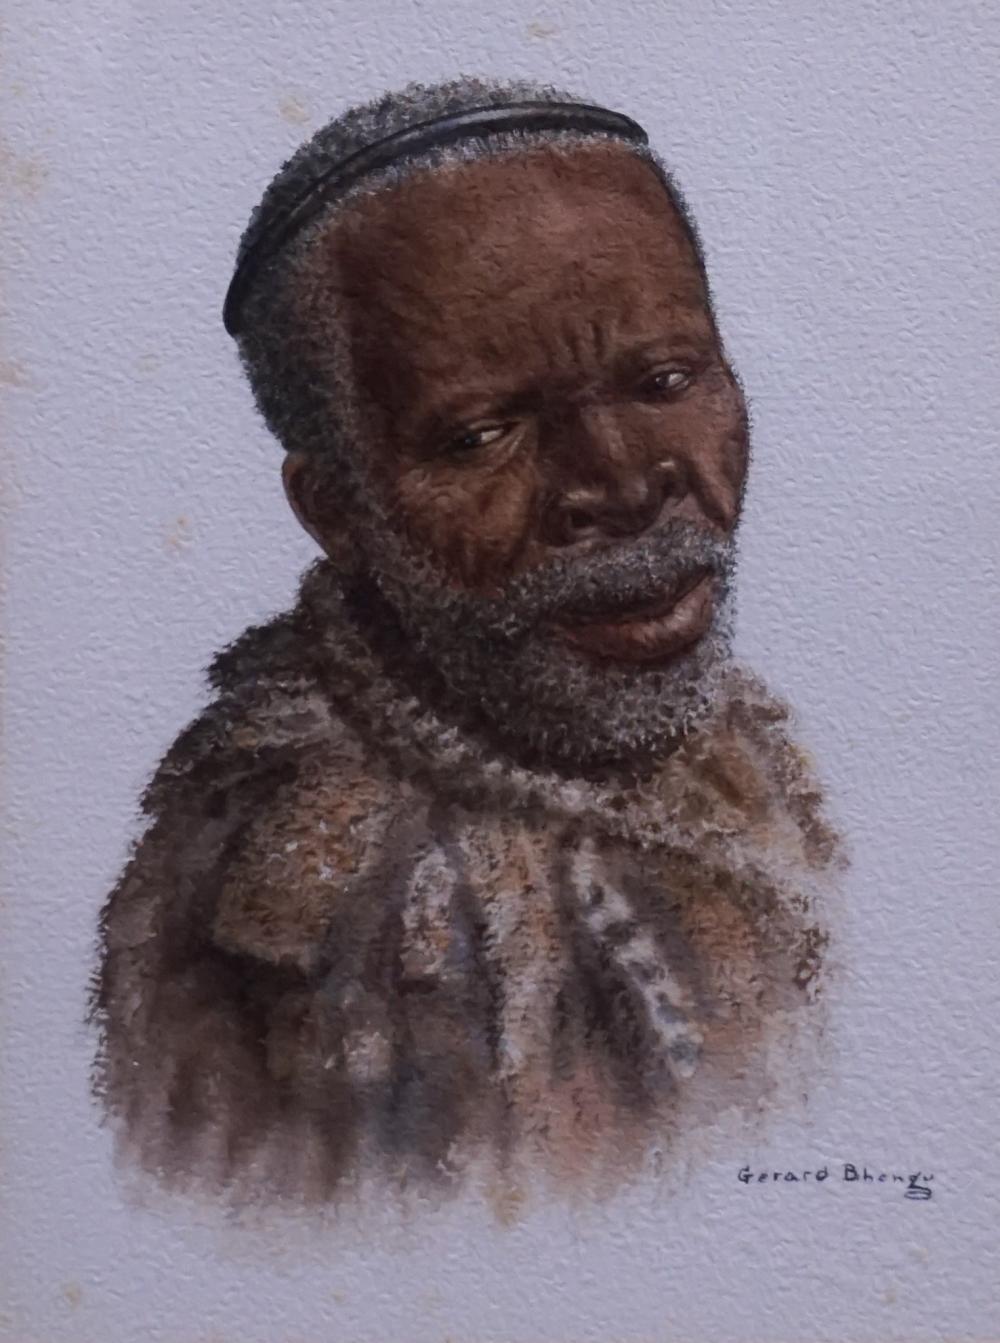 GERARD BHENGA (SOUTH AFRICAN 1910-1990),